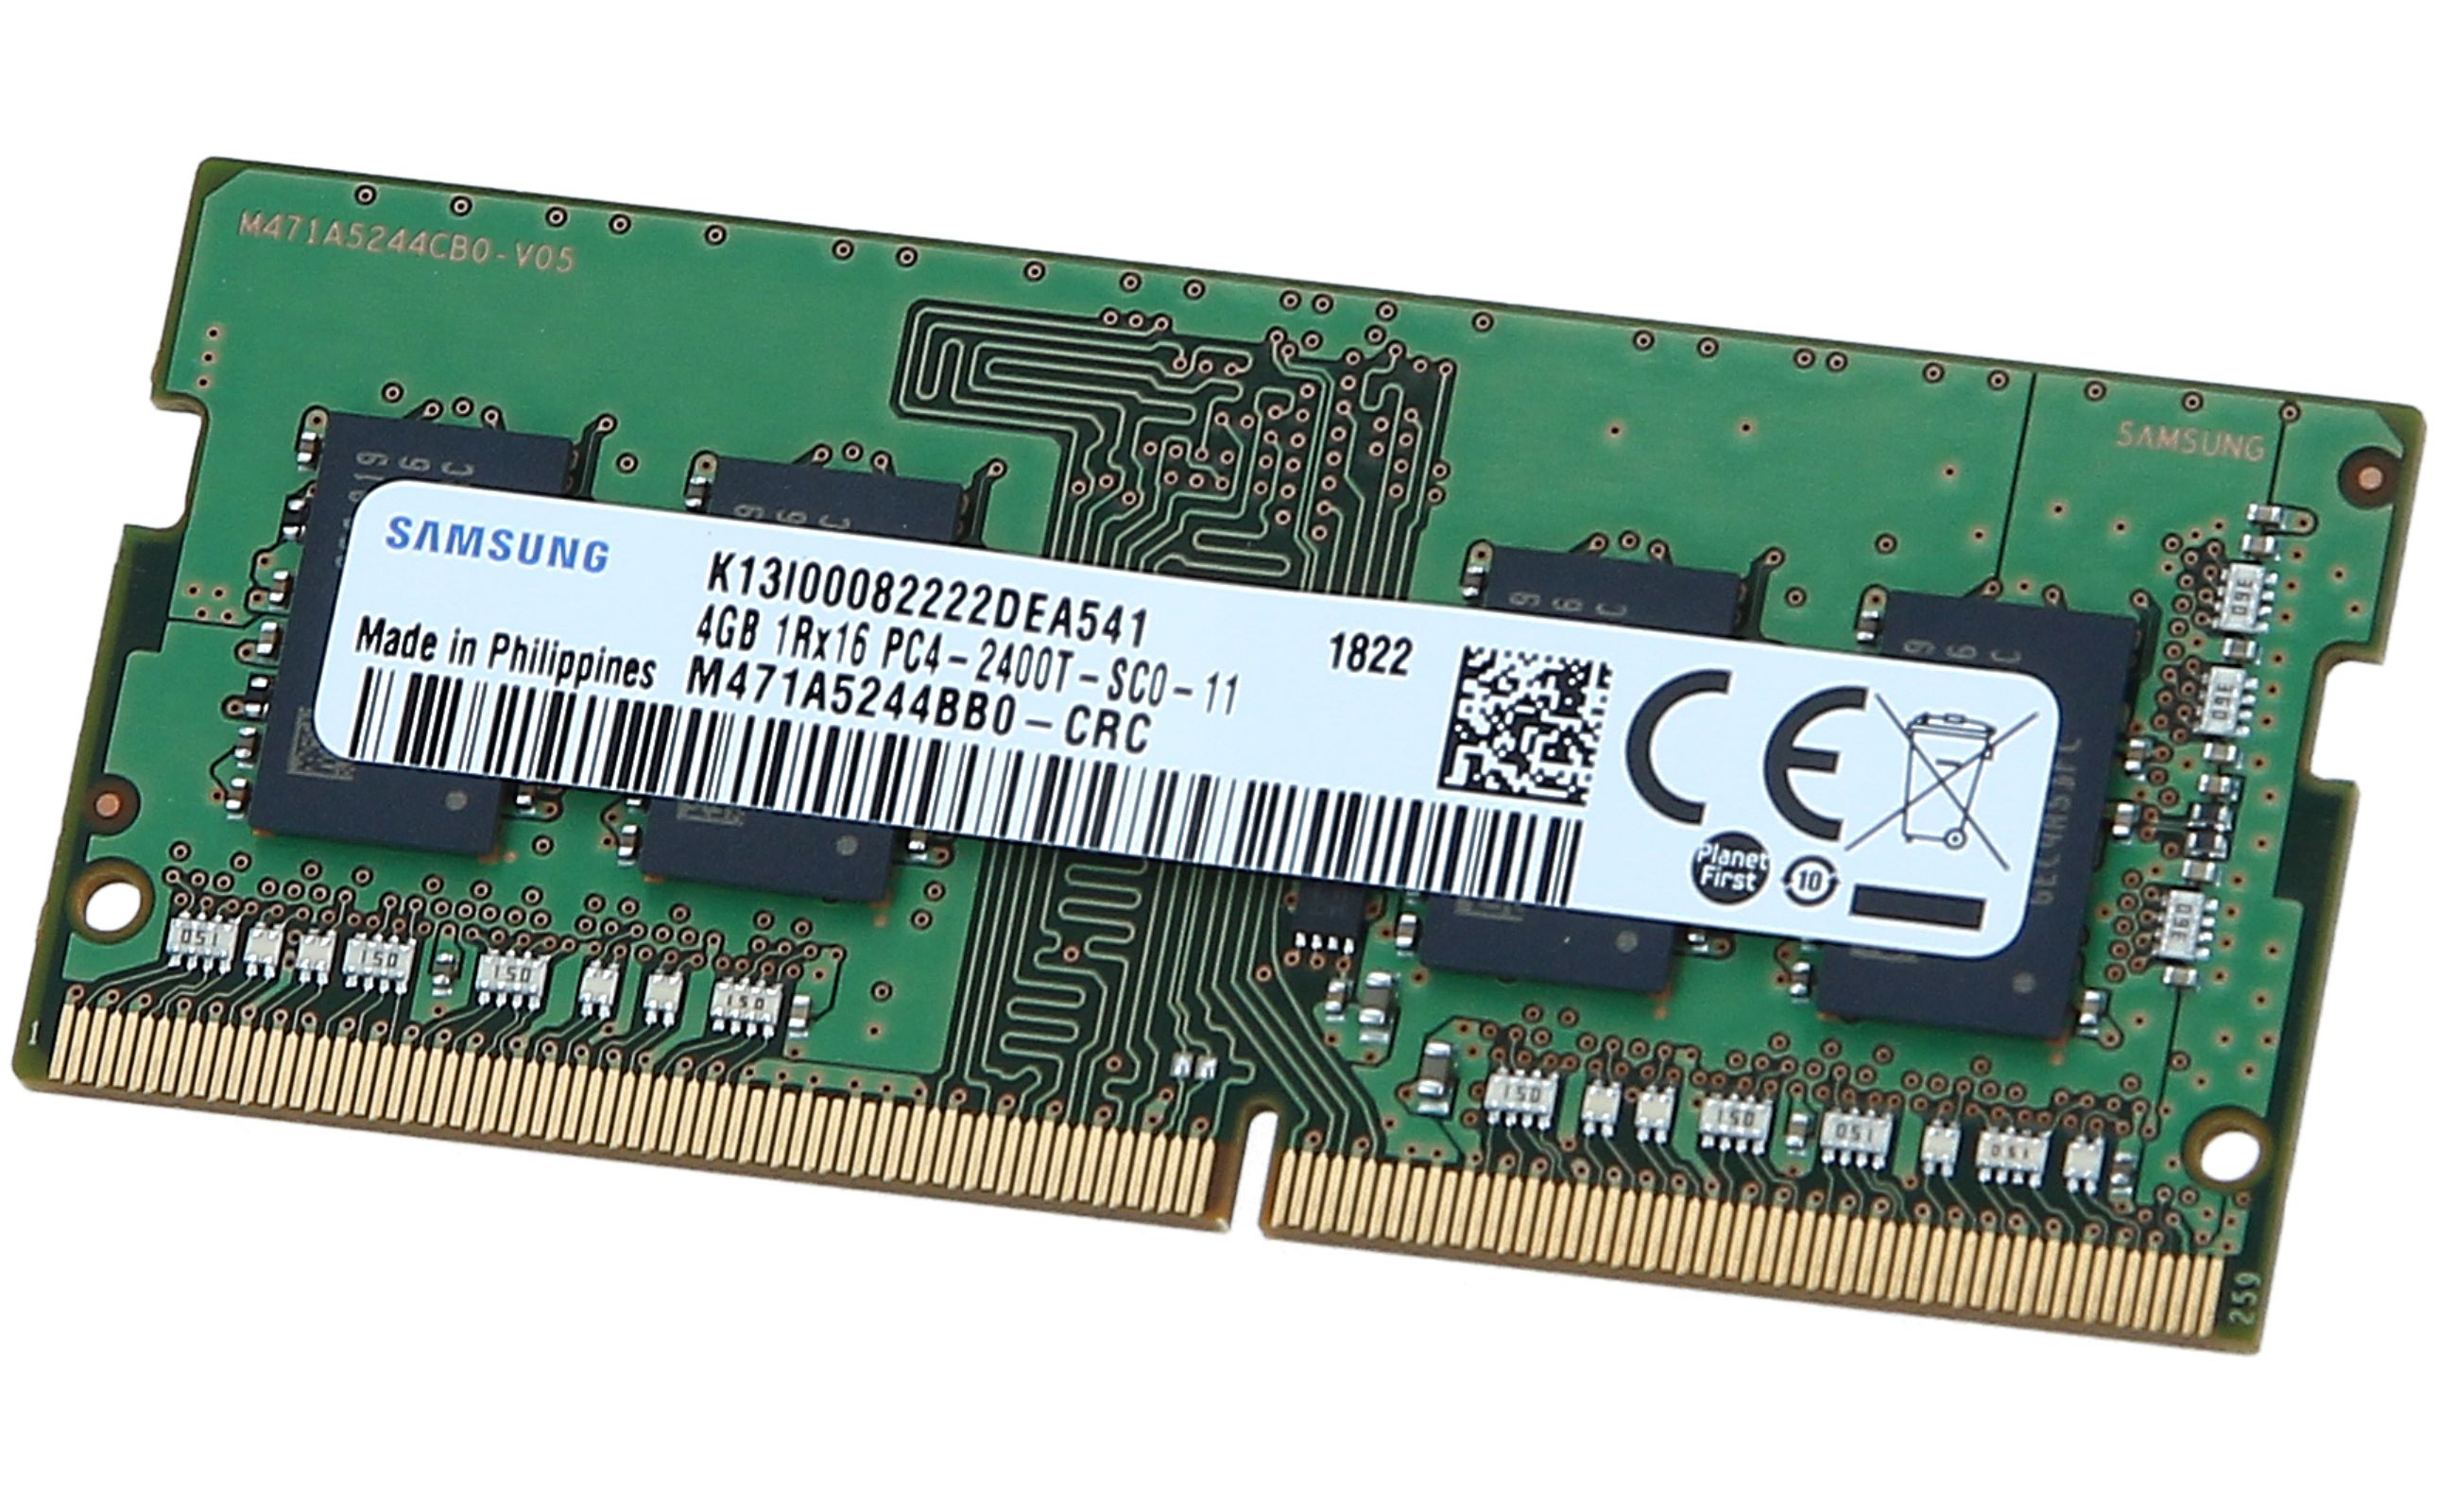 Samsung - M471A5244BB0-CRC - 4GB (1*4GB) 1RX16 PC4-2400T-S DDR4